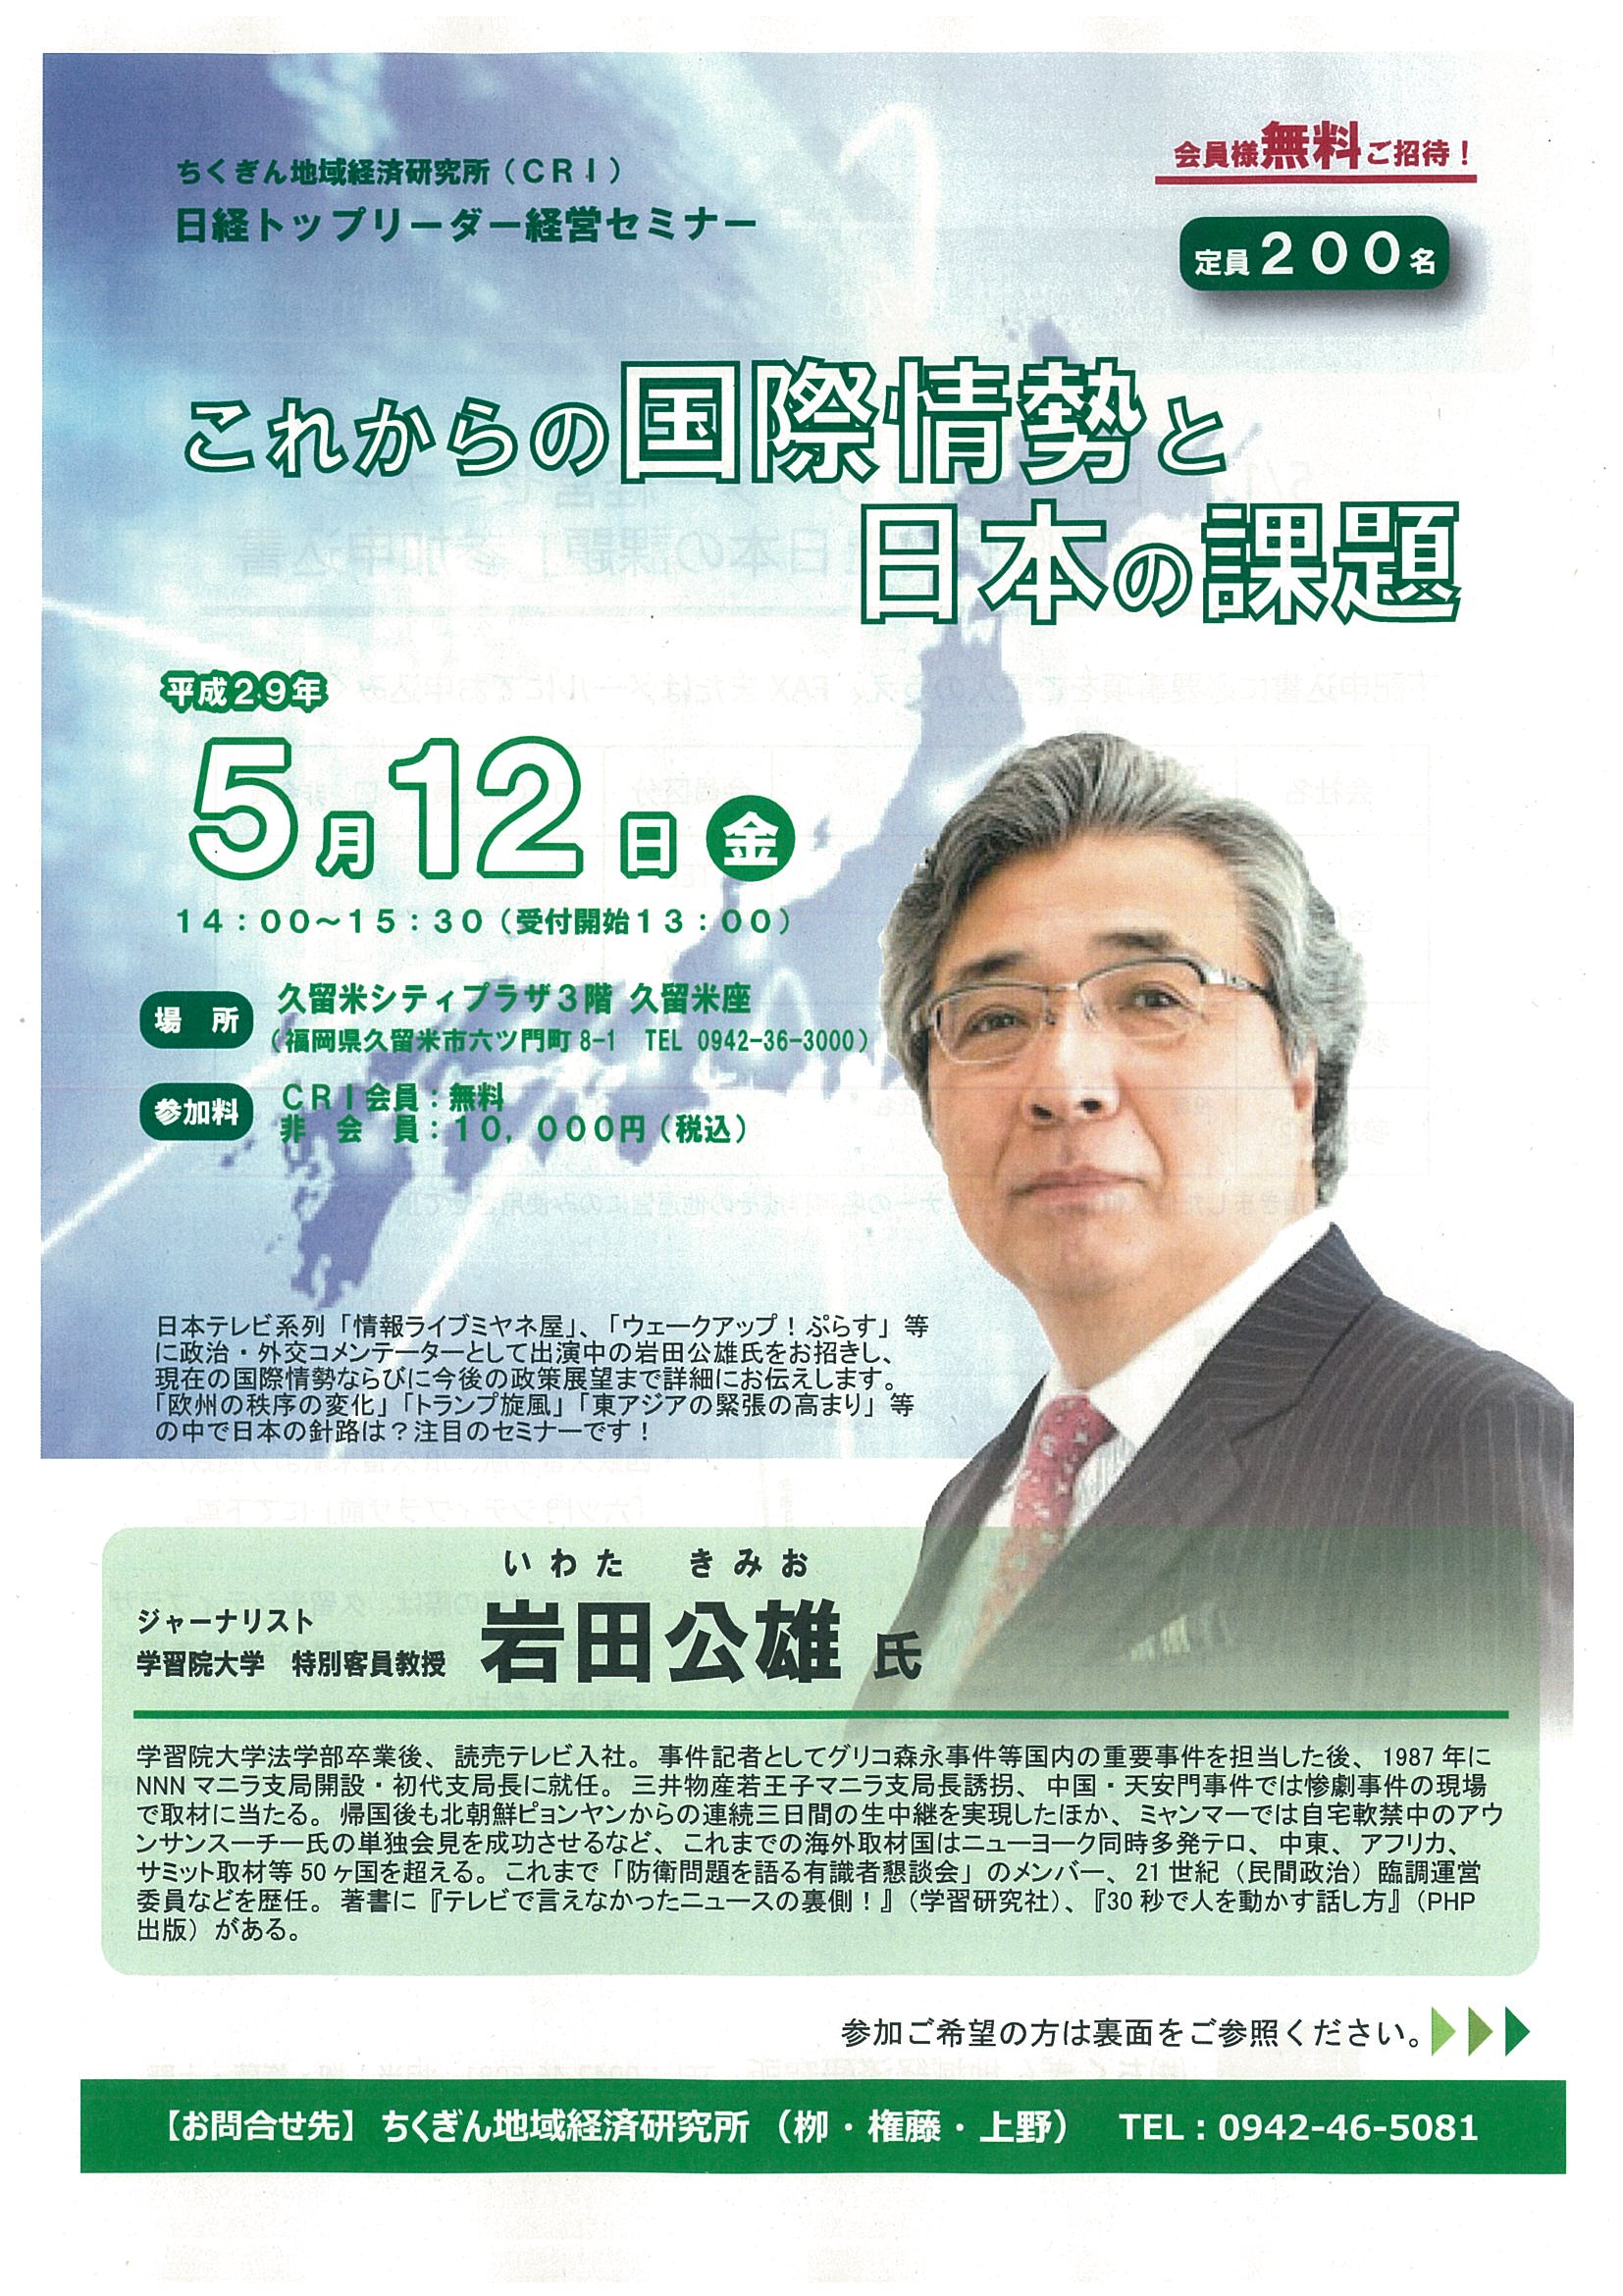 日経トップリーダー経営セミナー「これからの国際情勢と日本の課題」